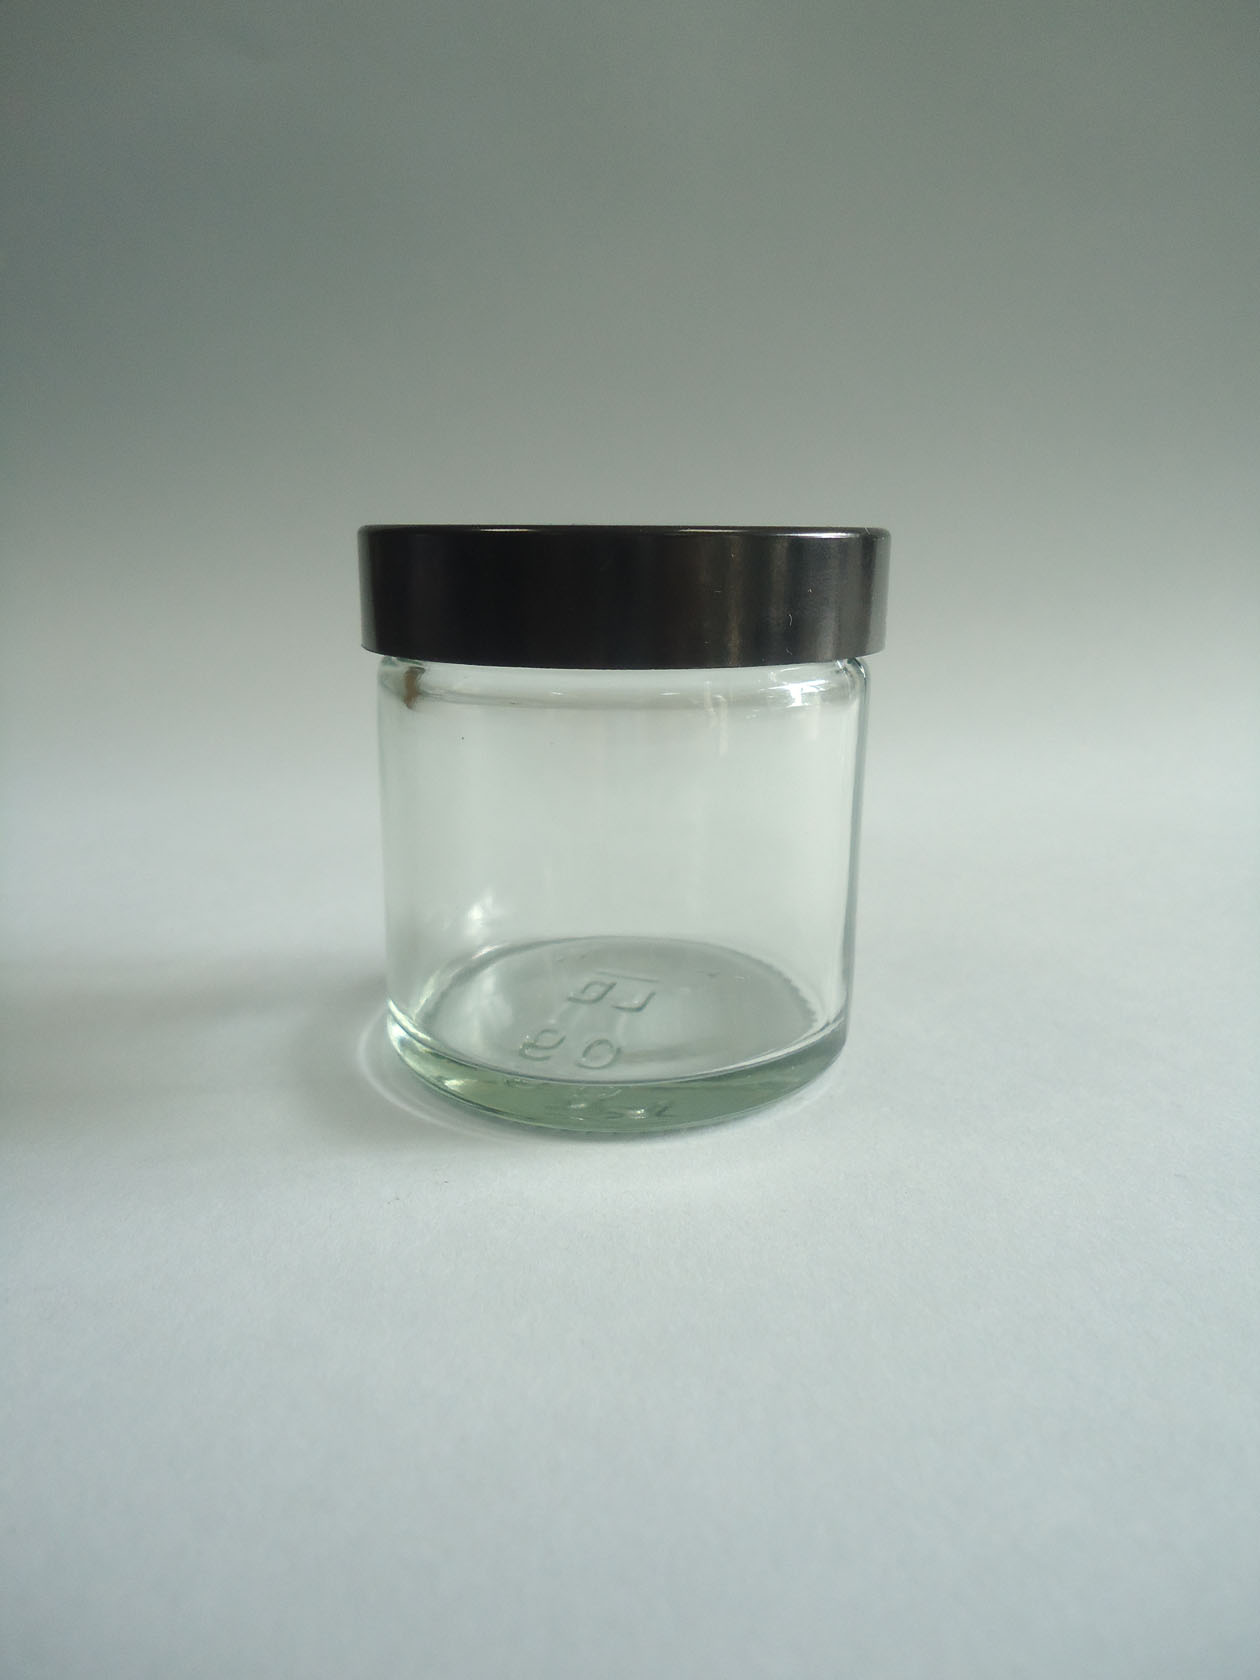 Transparente: Bote vidrio tapa baquelita negra 60 ml. transparente